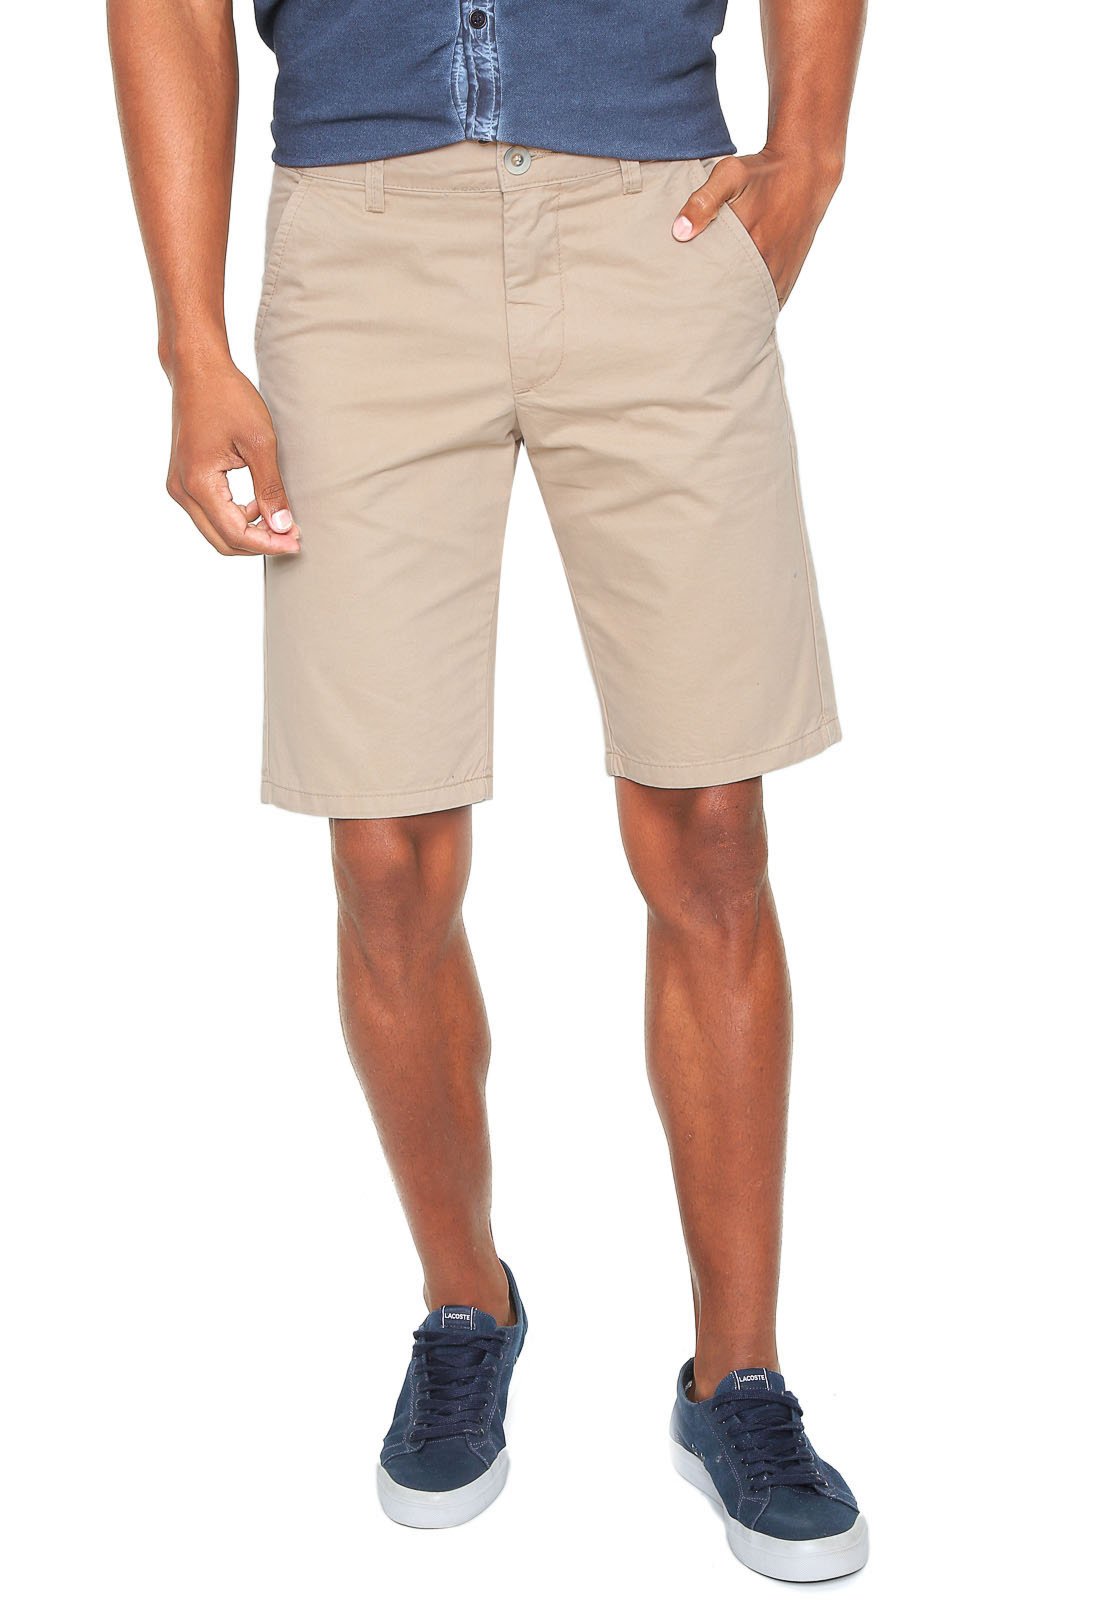 shorts da polo wear masculino